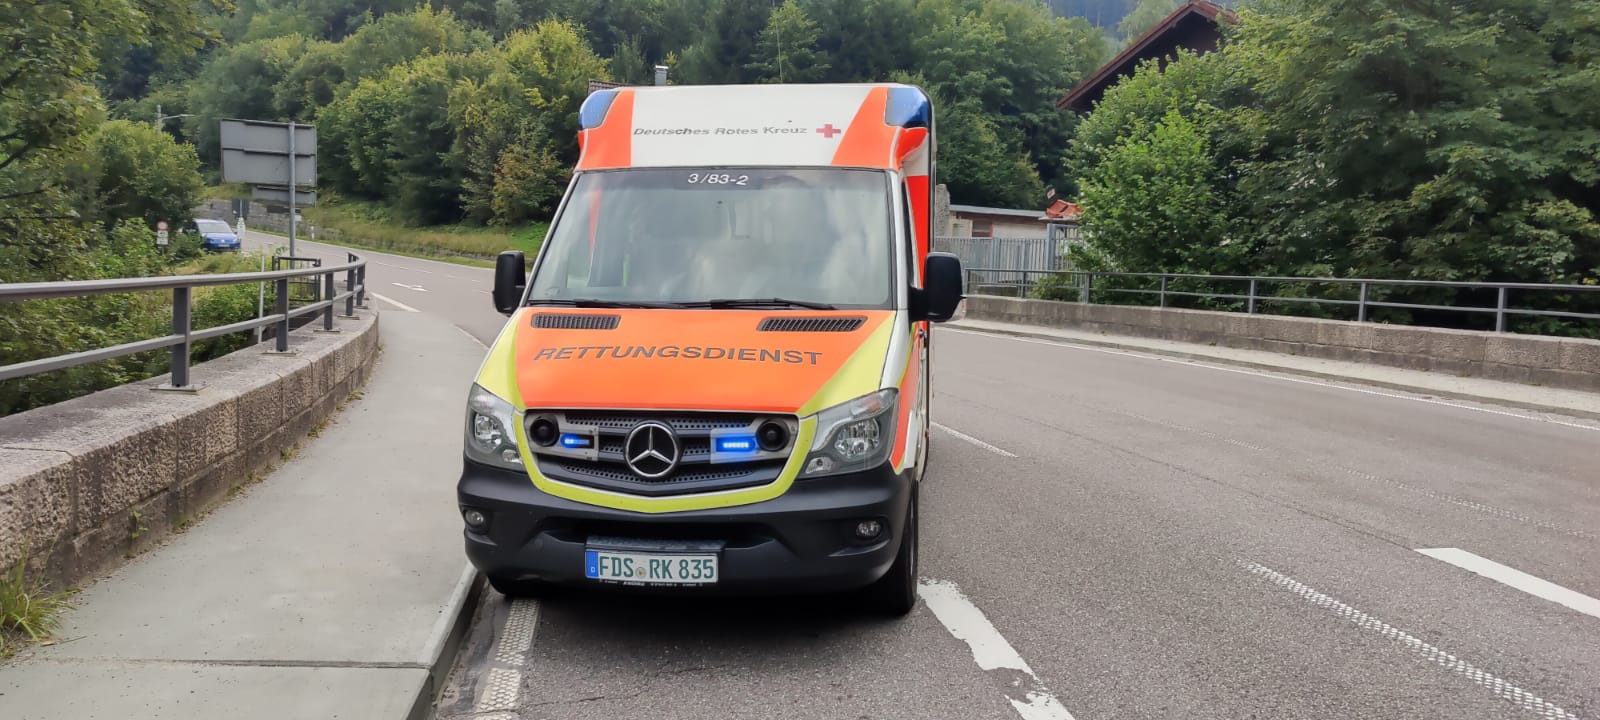 Rettungswagen Bereich Baiersbronn 